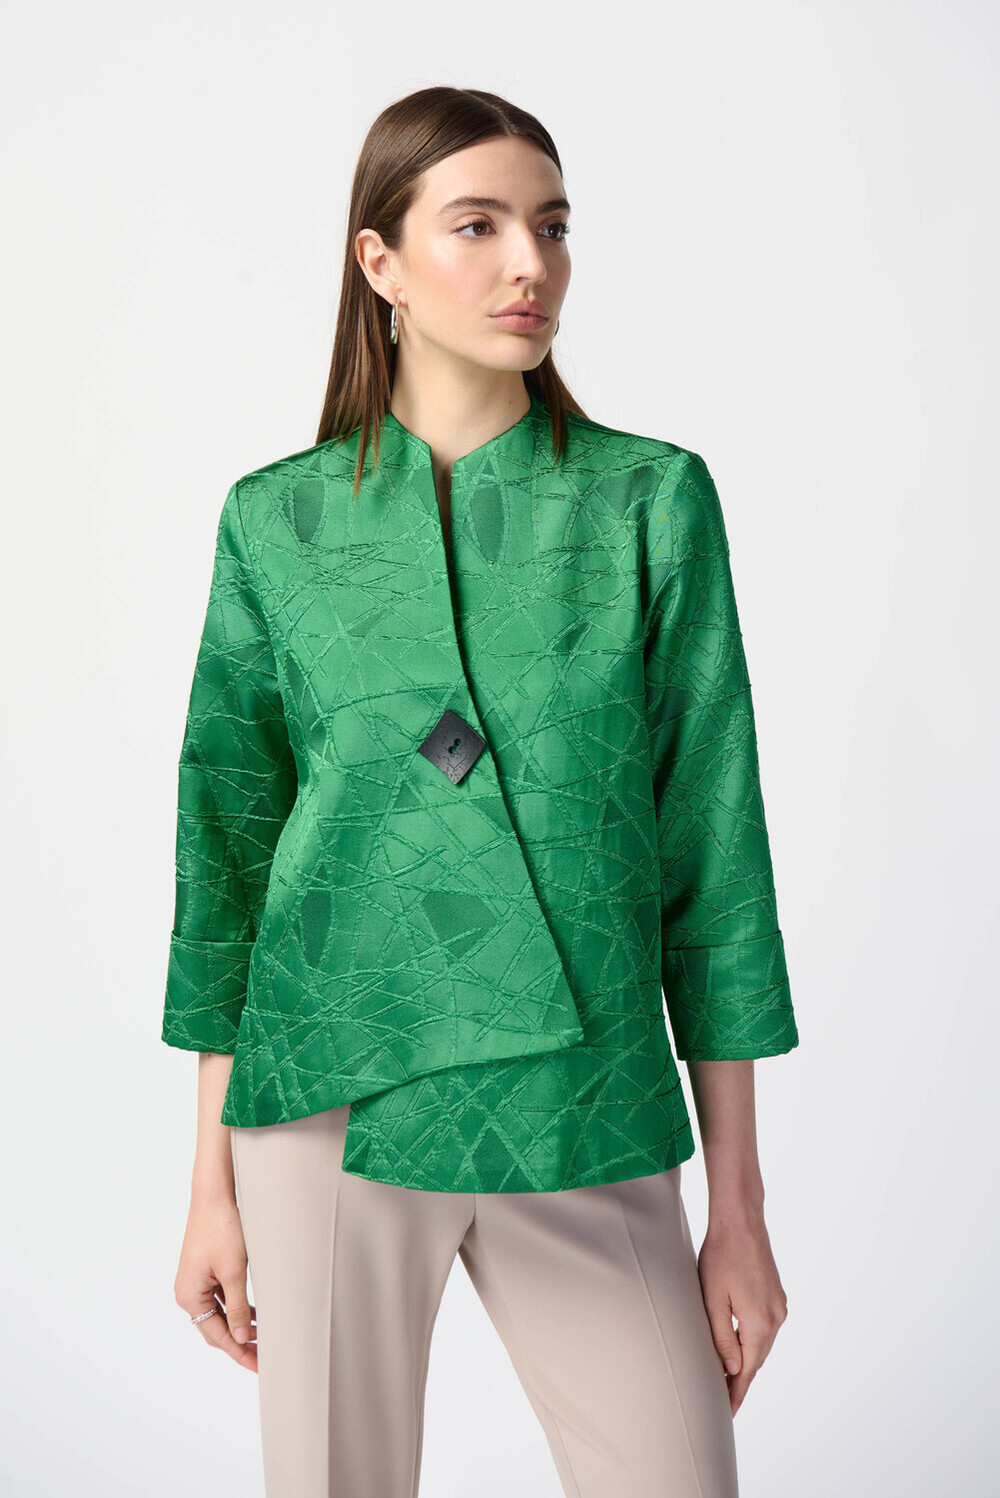 Textured Asymmetric Jacket Style 241263. Island Green